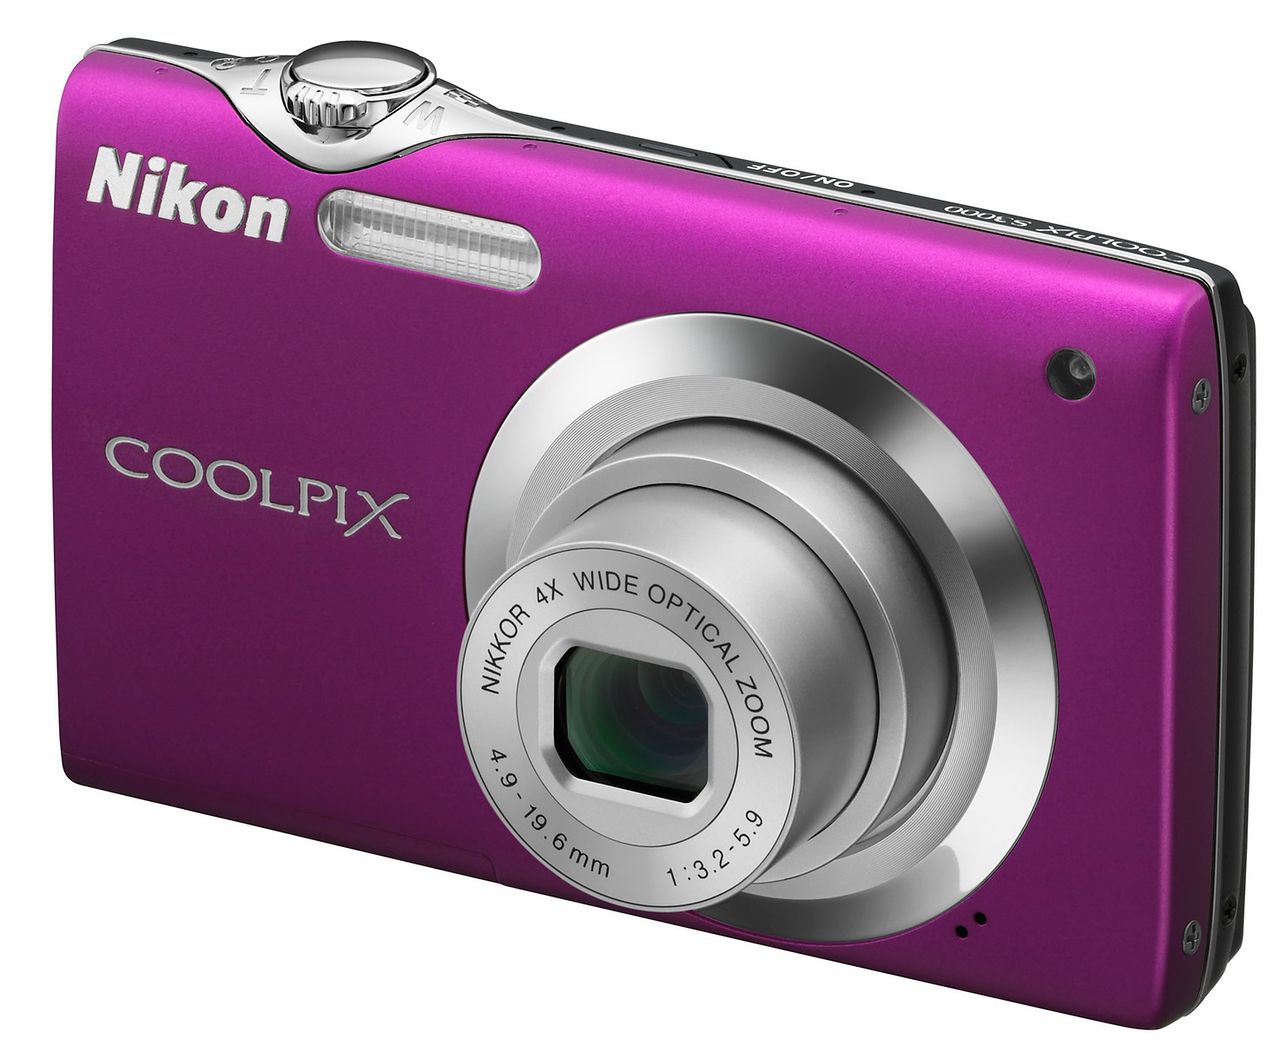 Nikon Coolpix S3000 oferuje wiele funkcji umożliwiających dostosowanie parametrów aparatu do typu wykonywanego zdjęcia